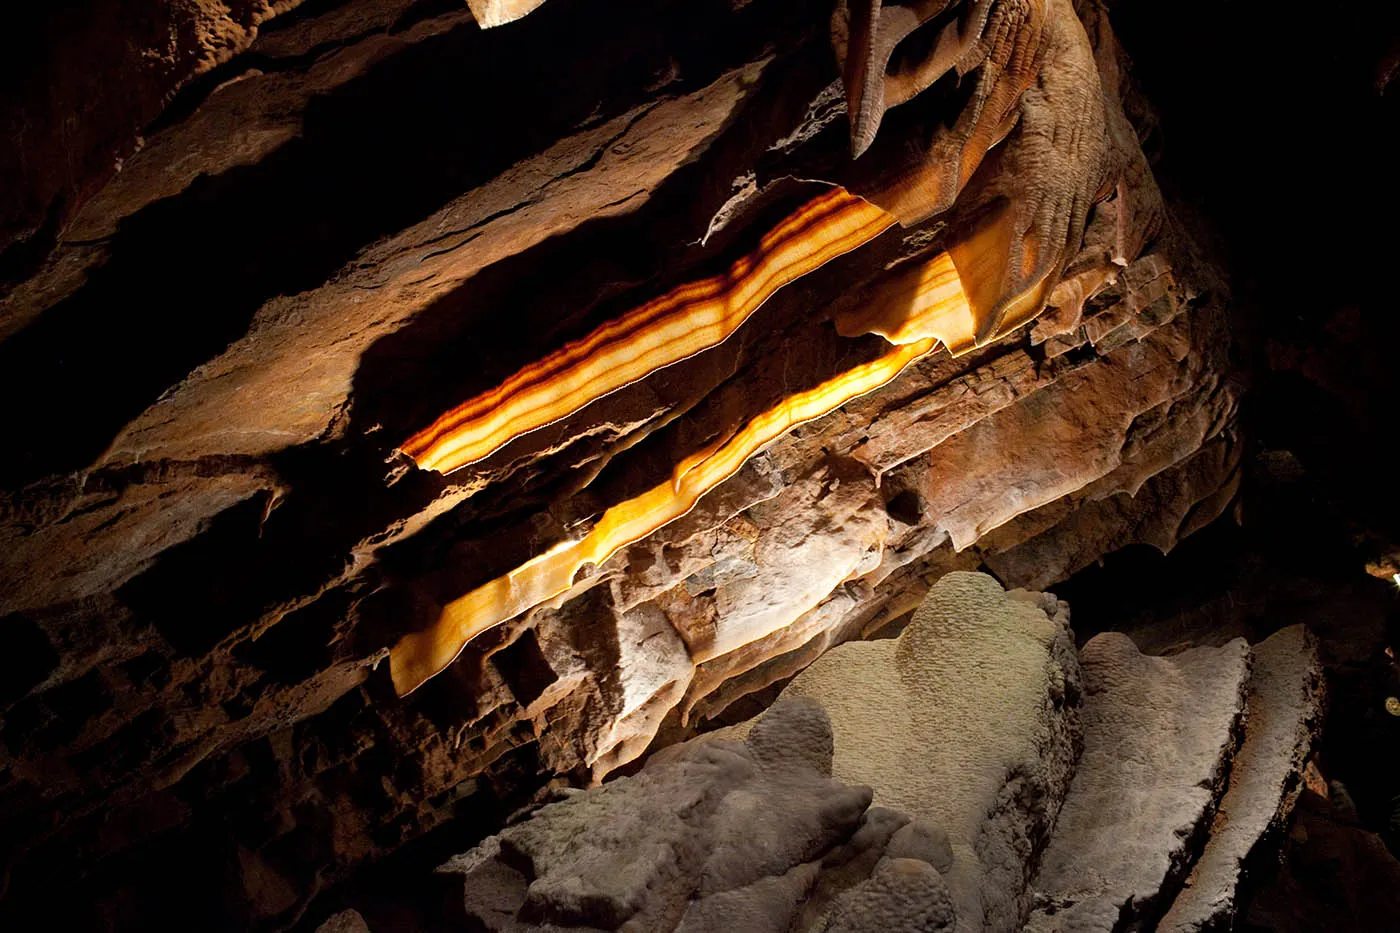 Bacon formations at Shenandoah Caverns in Virginia